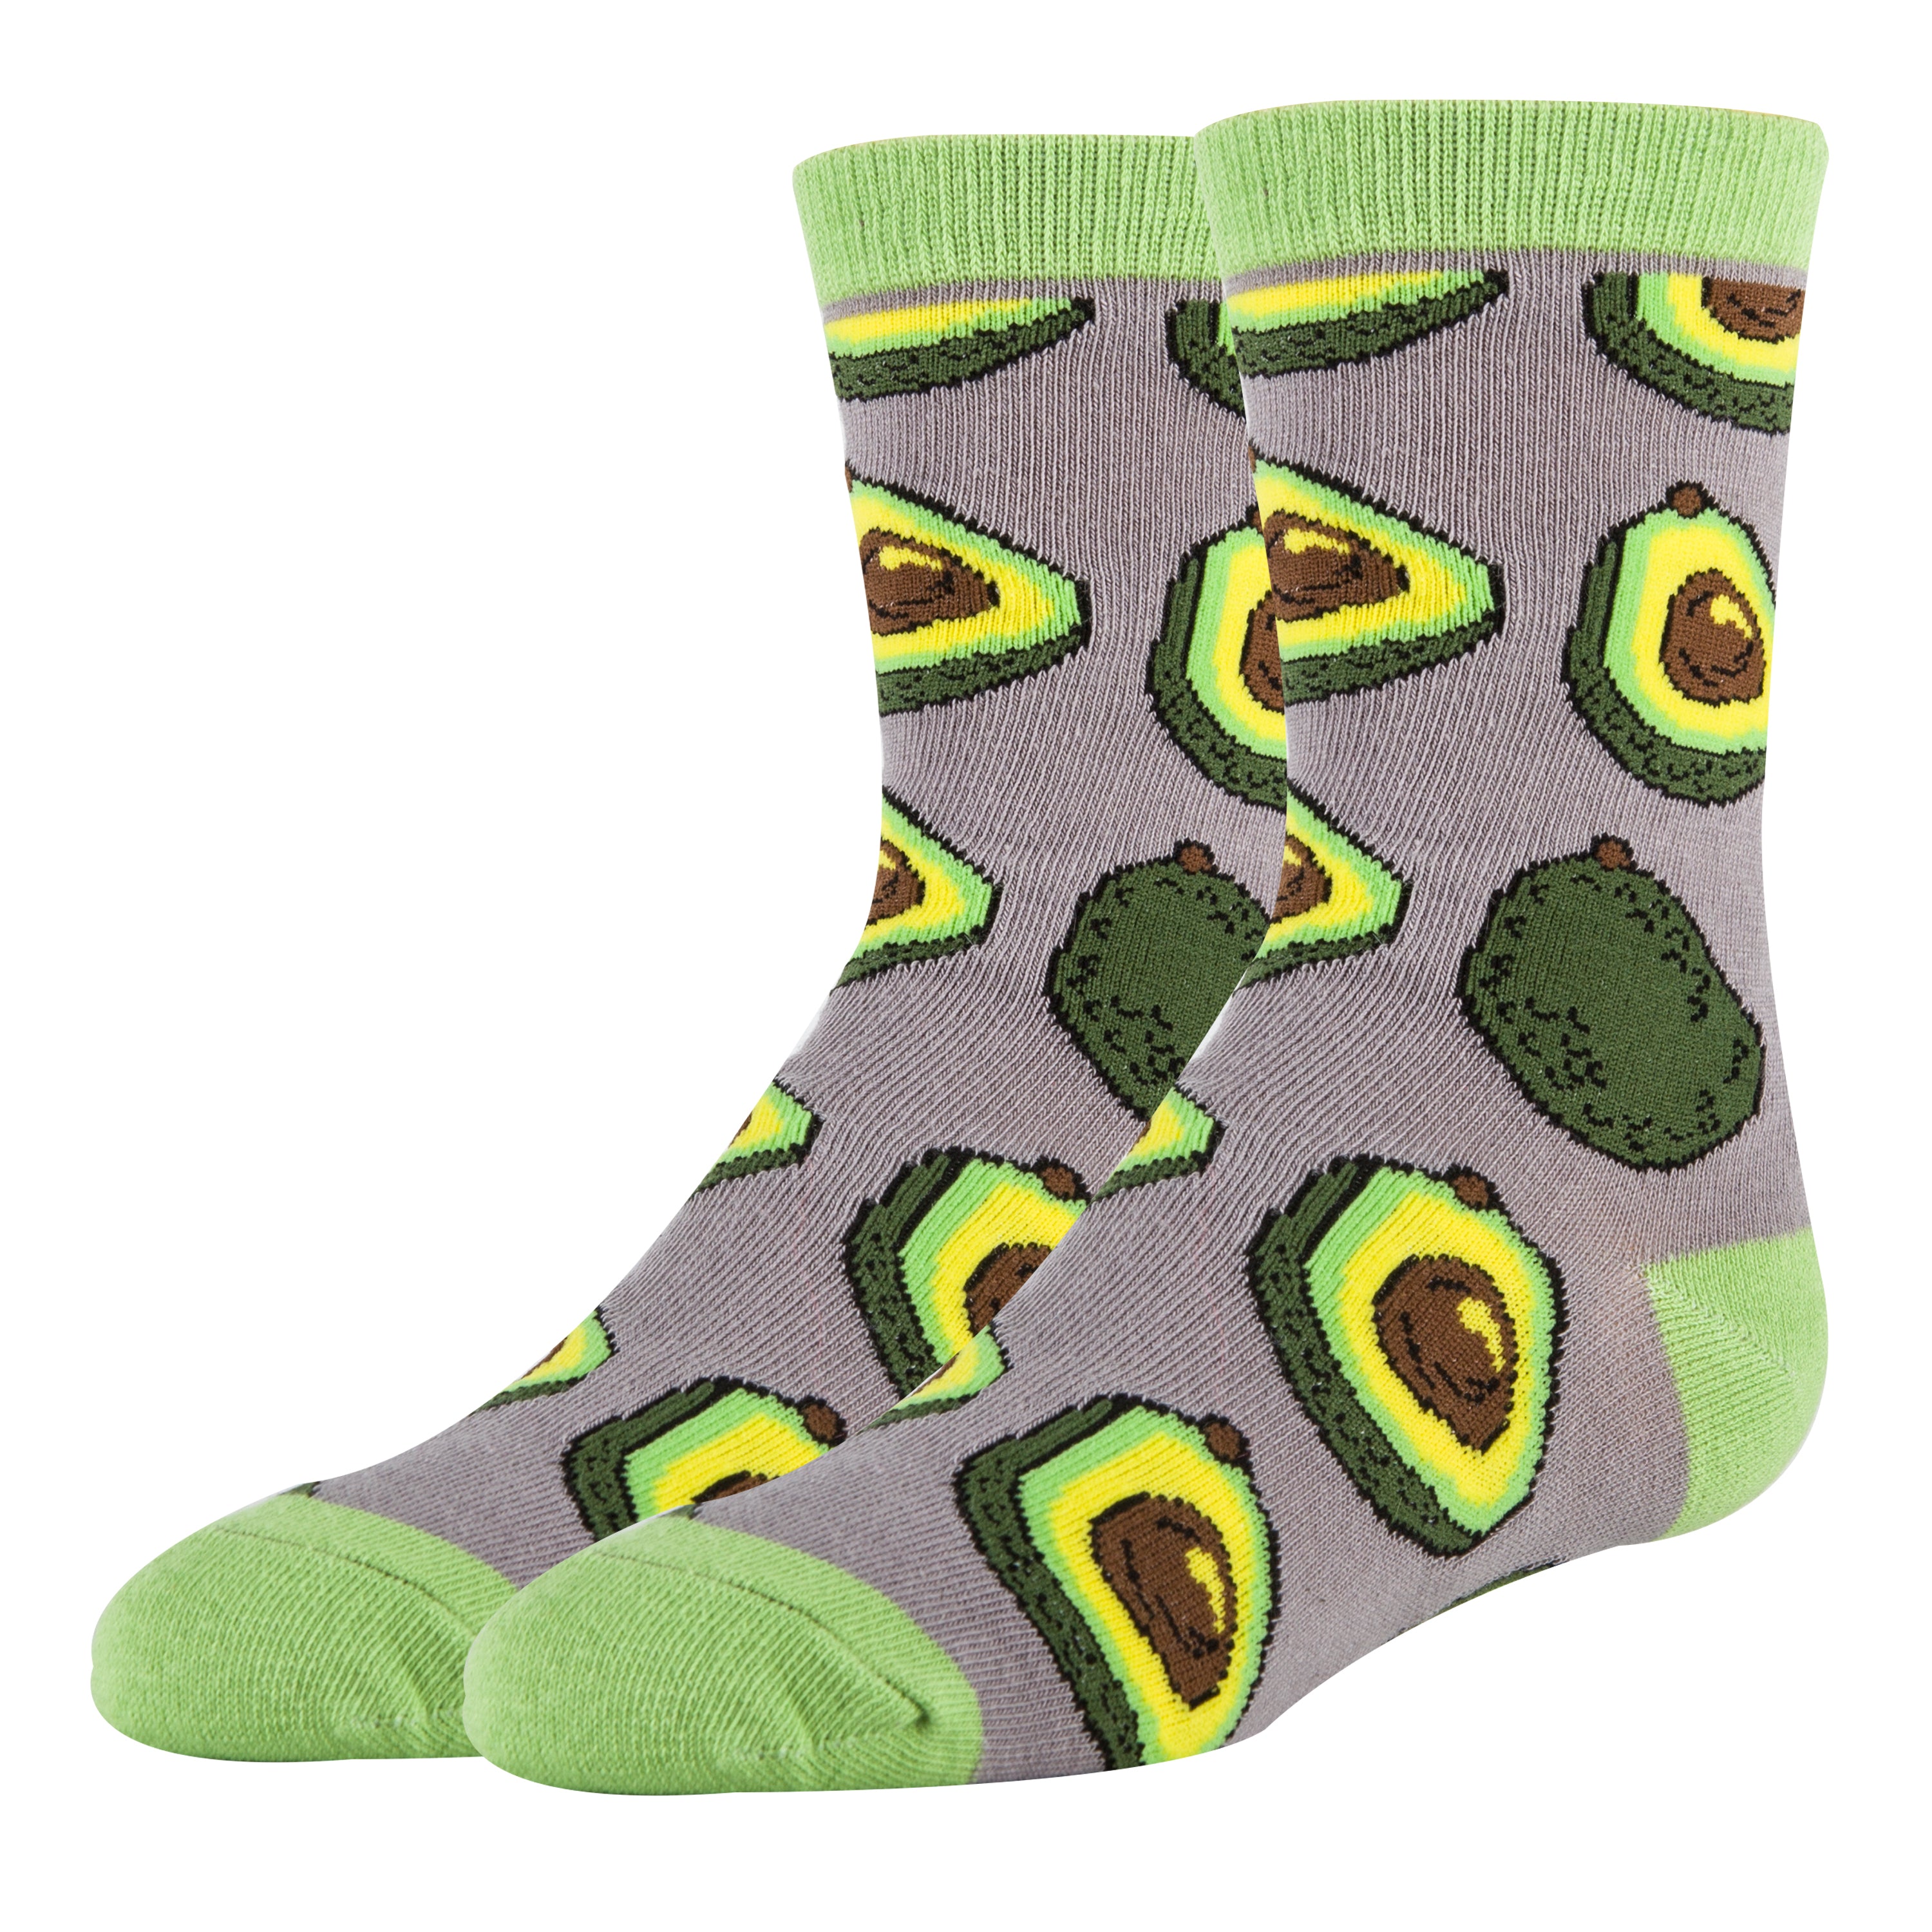 Avocado Life Socks | Novelty Crew Socks for Kids